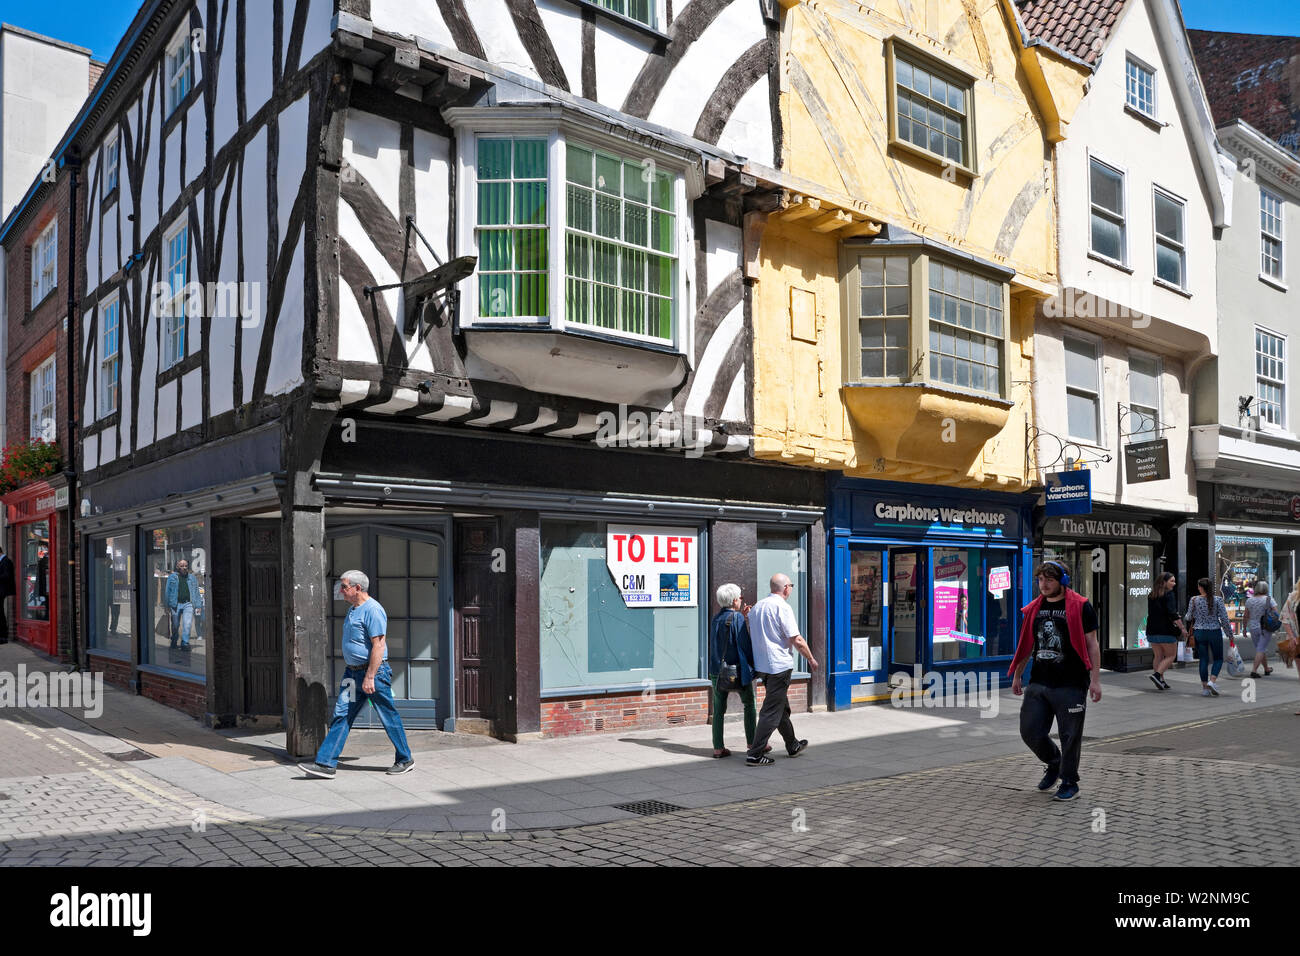 Magasins vides magasins magasin boutique à louer dans le centre-ville haute rue Coney Street York North Yorkshire Angleterre Royaume-Uni Banque D'Images